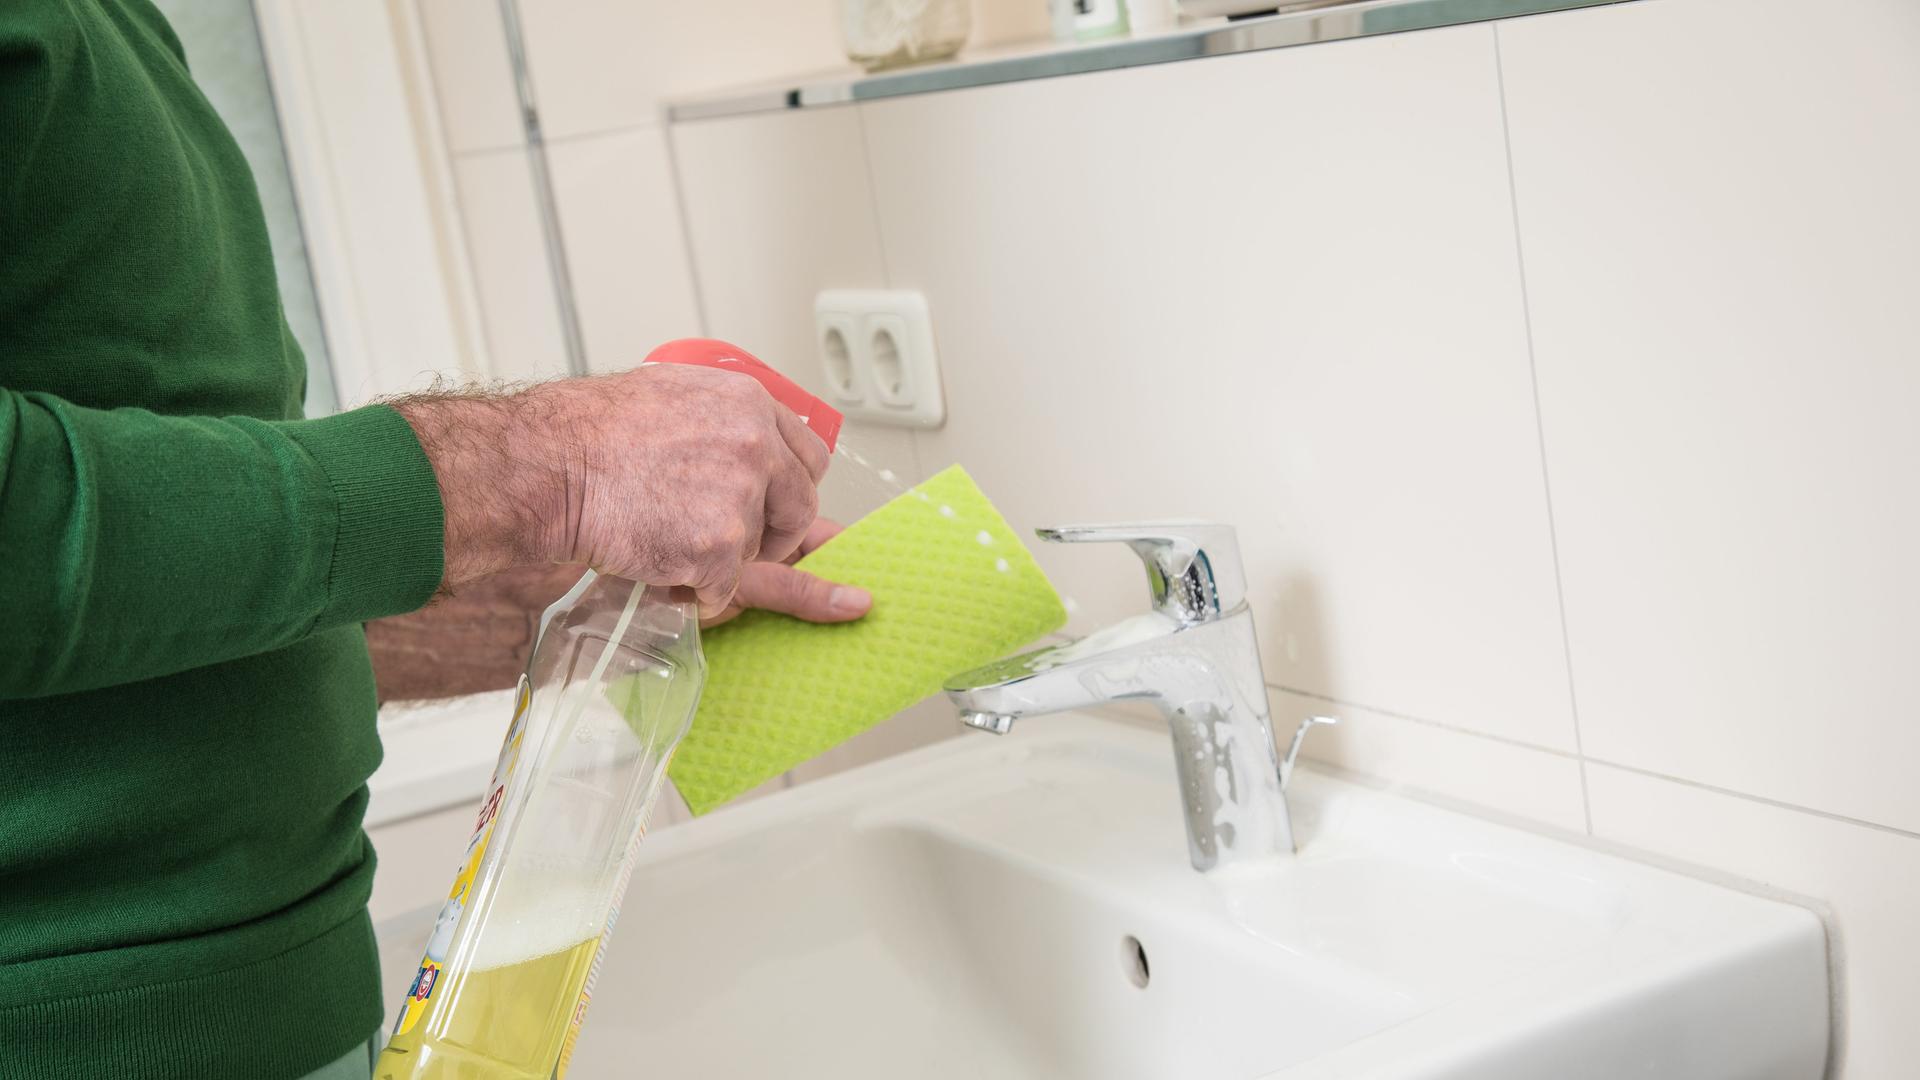 Ein Mann putzt ein Waschbecken mithilfe eines Lappens und Putzmittel.